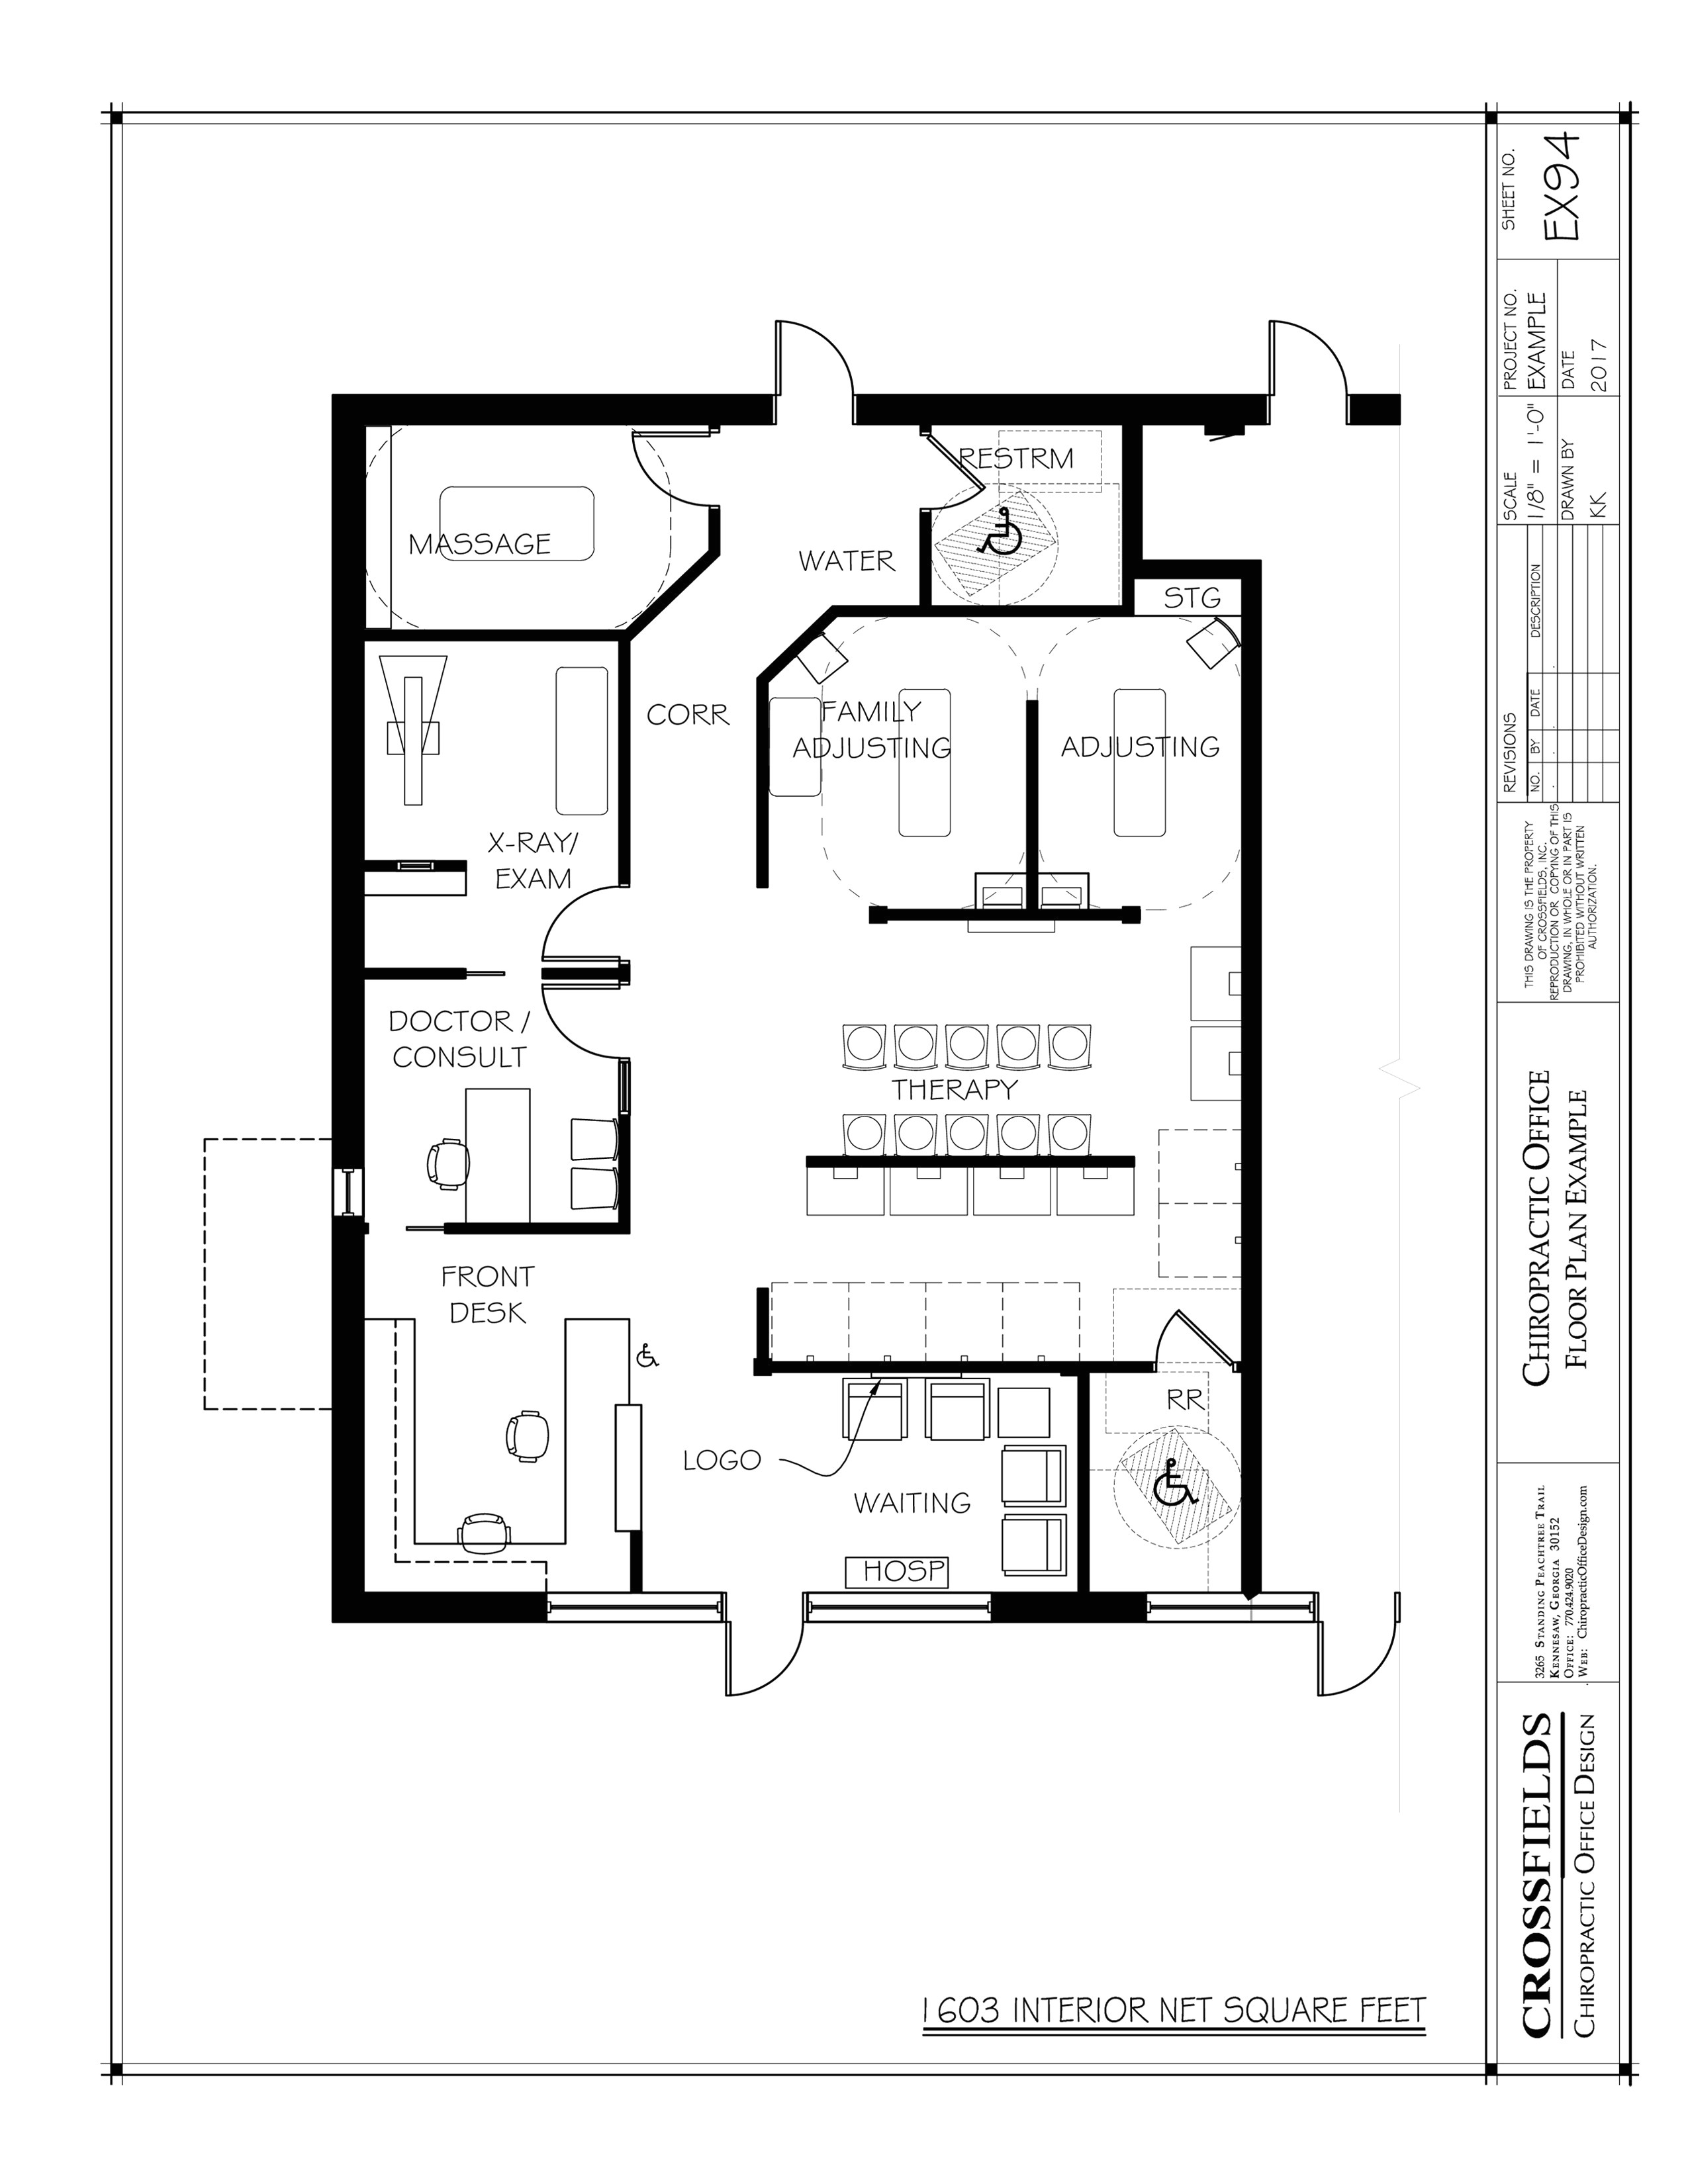 homes of merit modular floor plans lovely open floor plans for homes fresh open floor plans